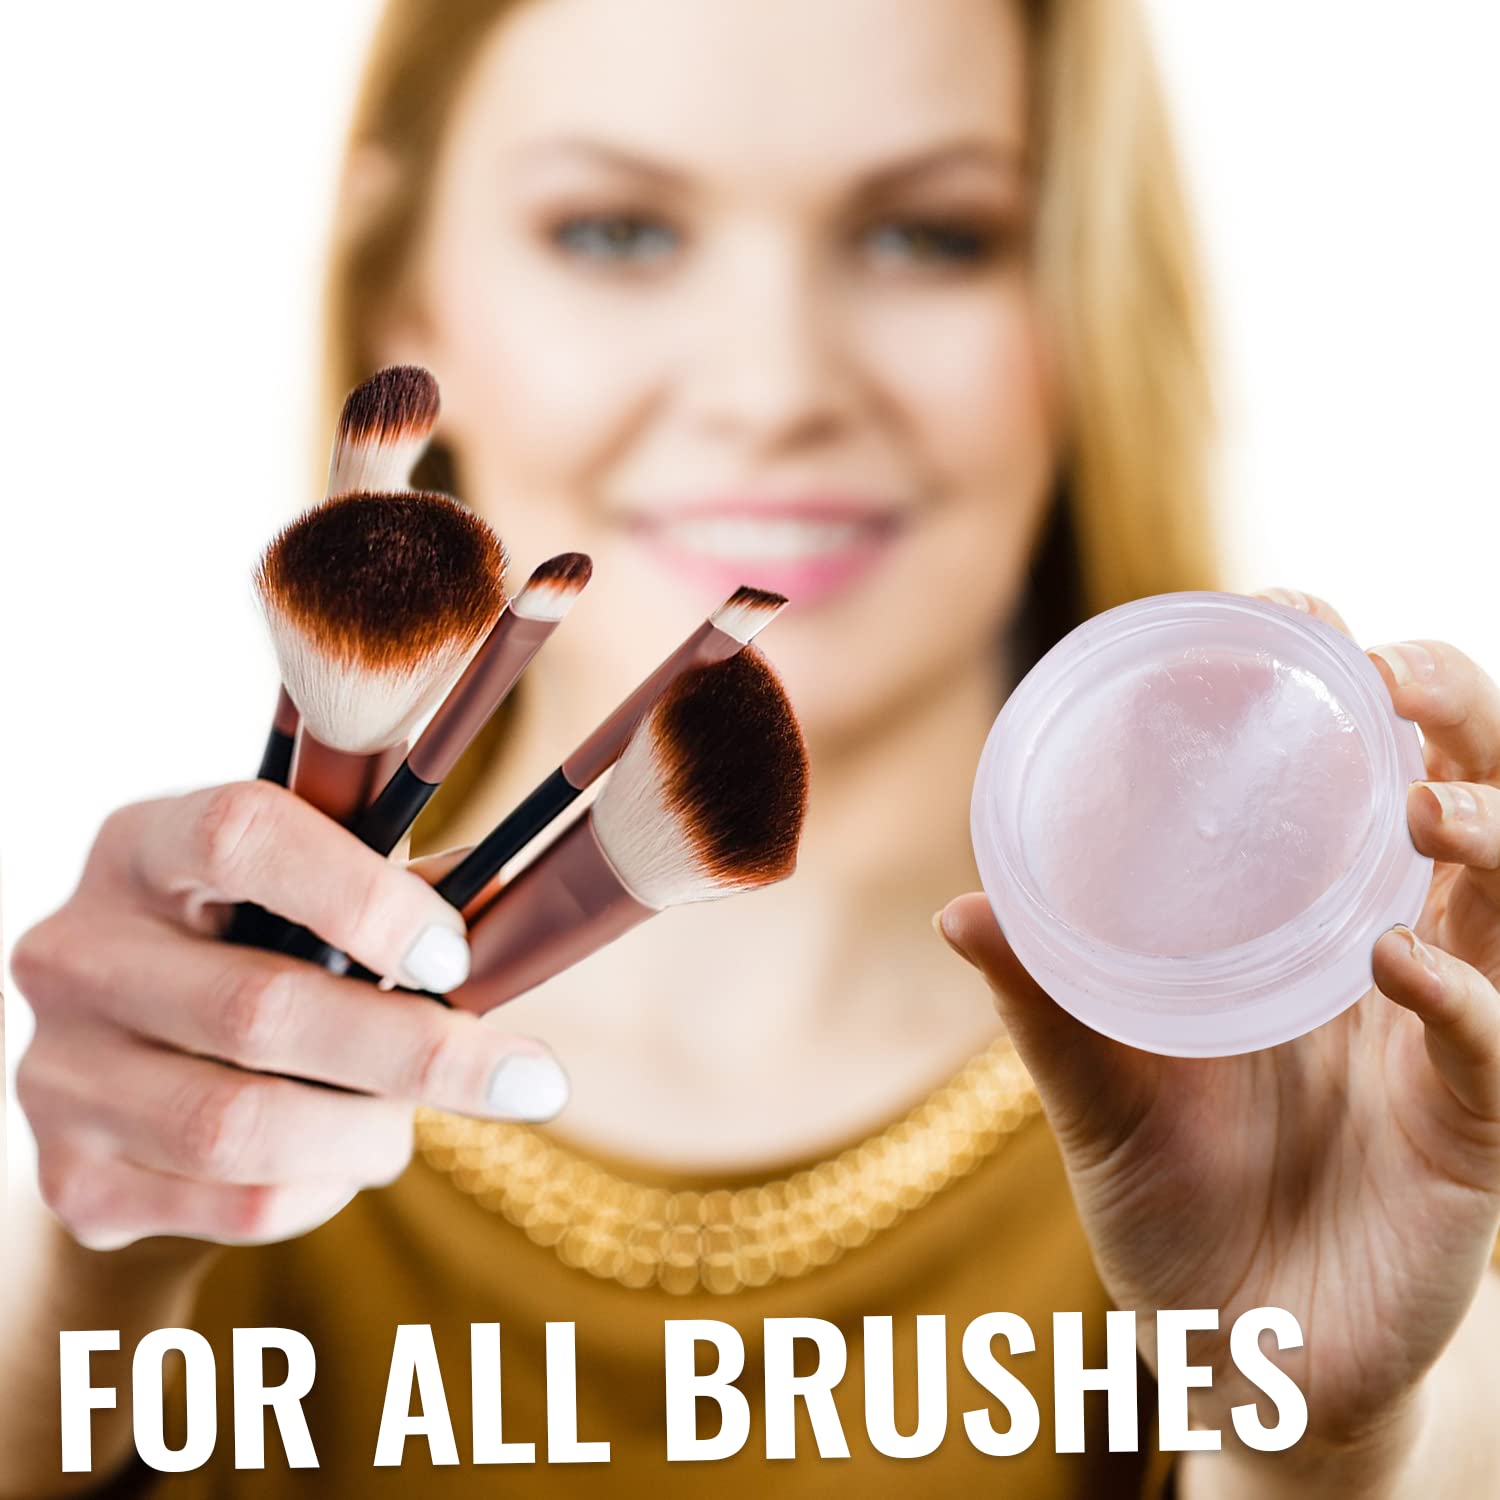 iMethod Makeup Brush Cleaner - Make up Brush Cleansers Solution with Makeup Brush Cleaner Mat, Beauty Blender Cleanser, Makeup Sponge Cleaner for Sponge Applicator, Makeup Brush